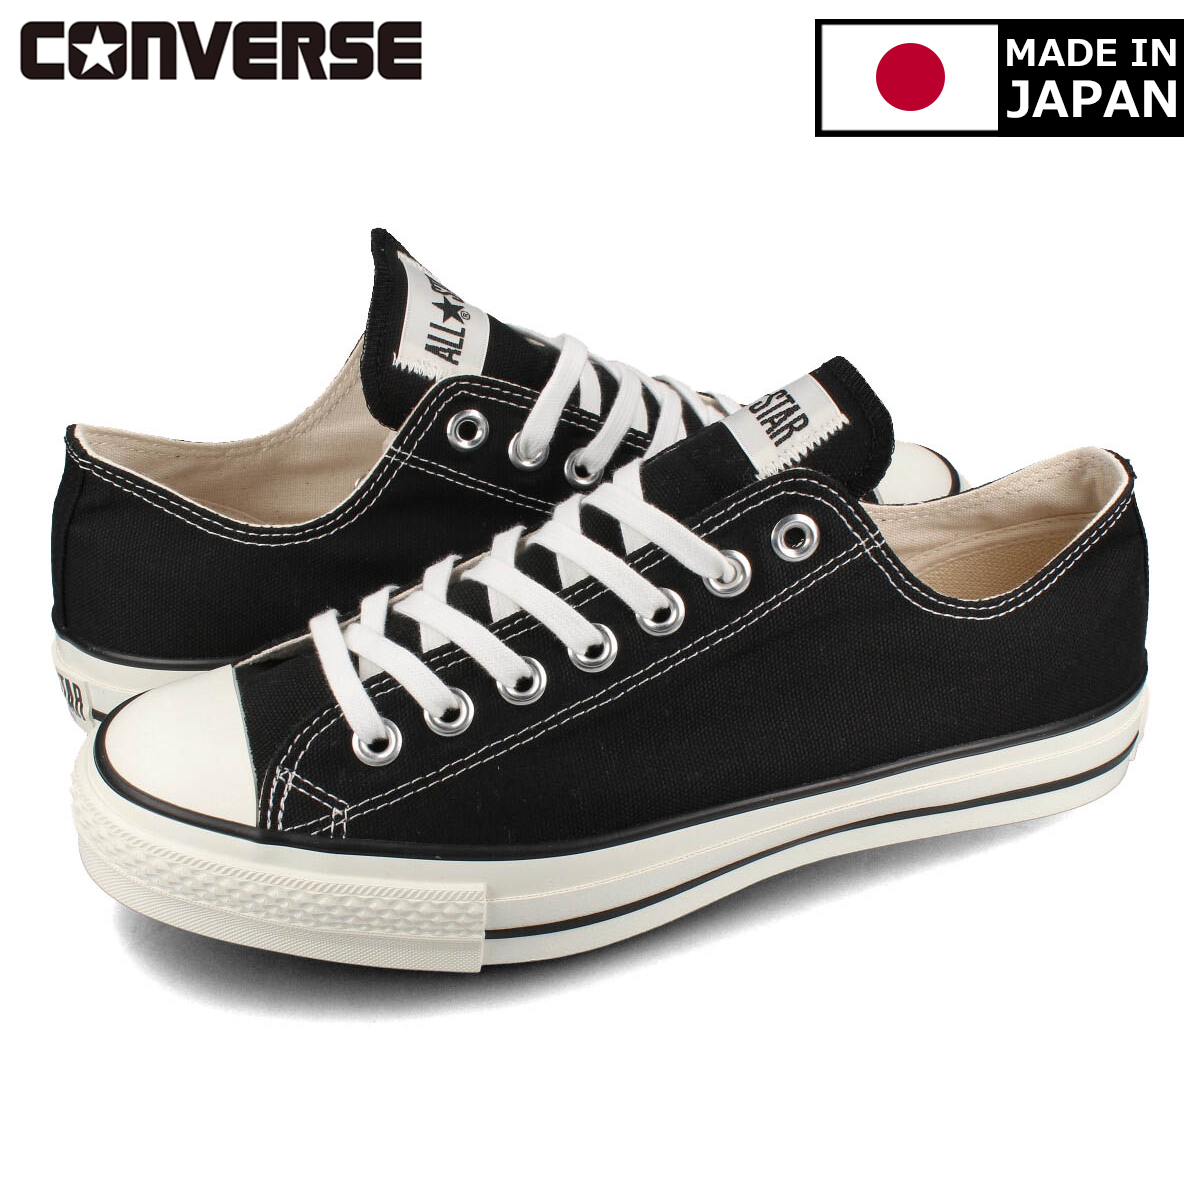 【送料無料】【CONVERSE コンバース】メンズ 靴 スニーカー MADE IN JAPAN メイド イン ジャパン 日本製 32167431 CONVERSE CANVAS ALL STAR J OX 【MADE IN JAPAN】【日本製】 コンバース オールスター J OX BLACK